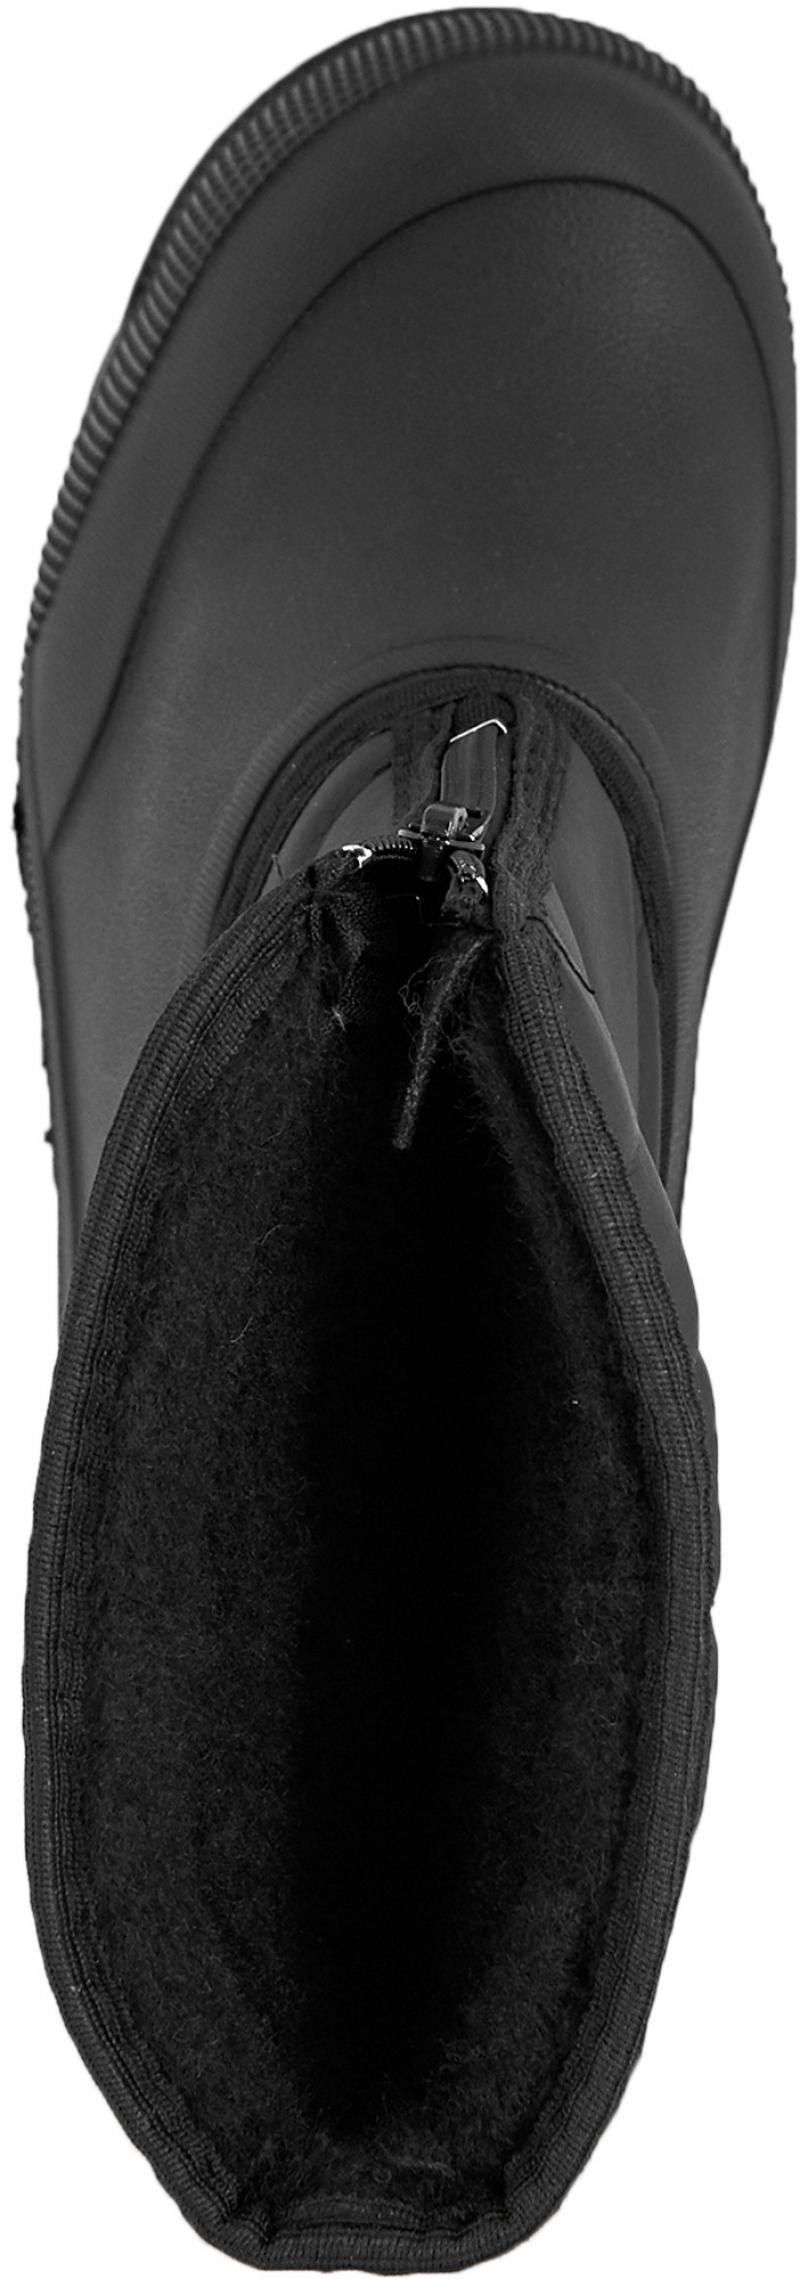 Сапоги мужские М-018 размер 41 цвет чёрный